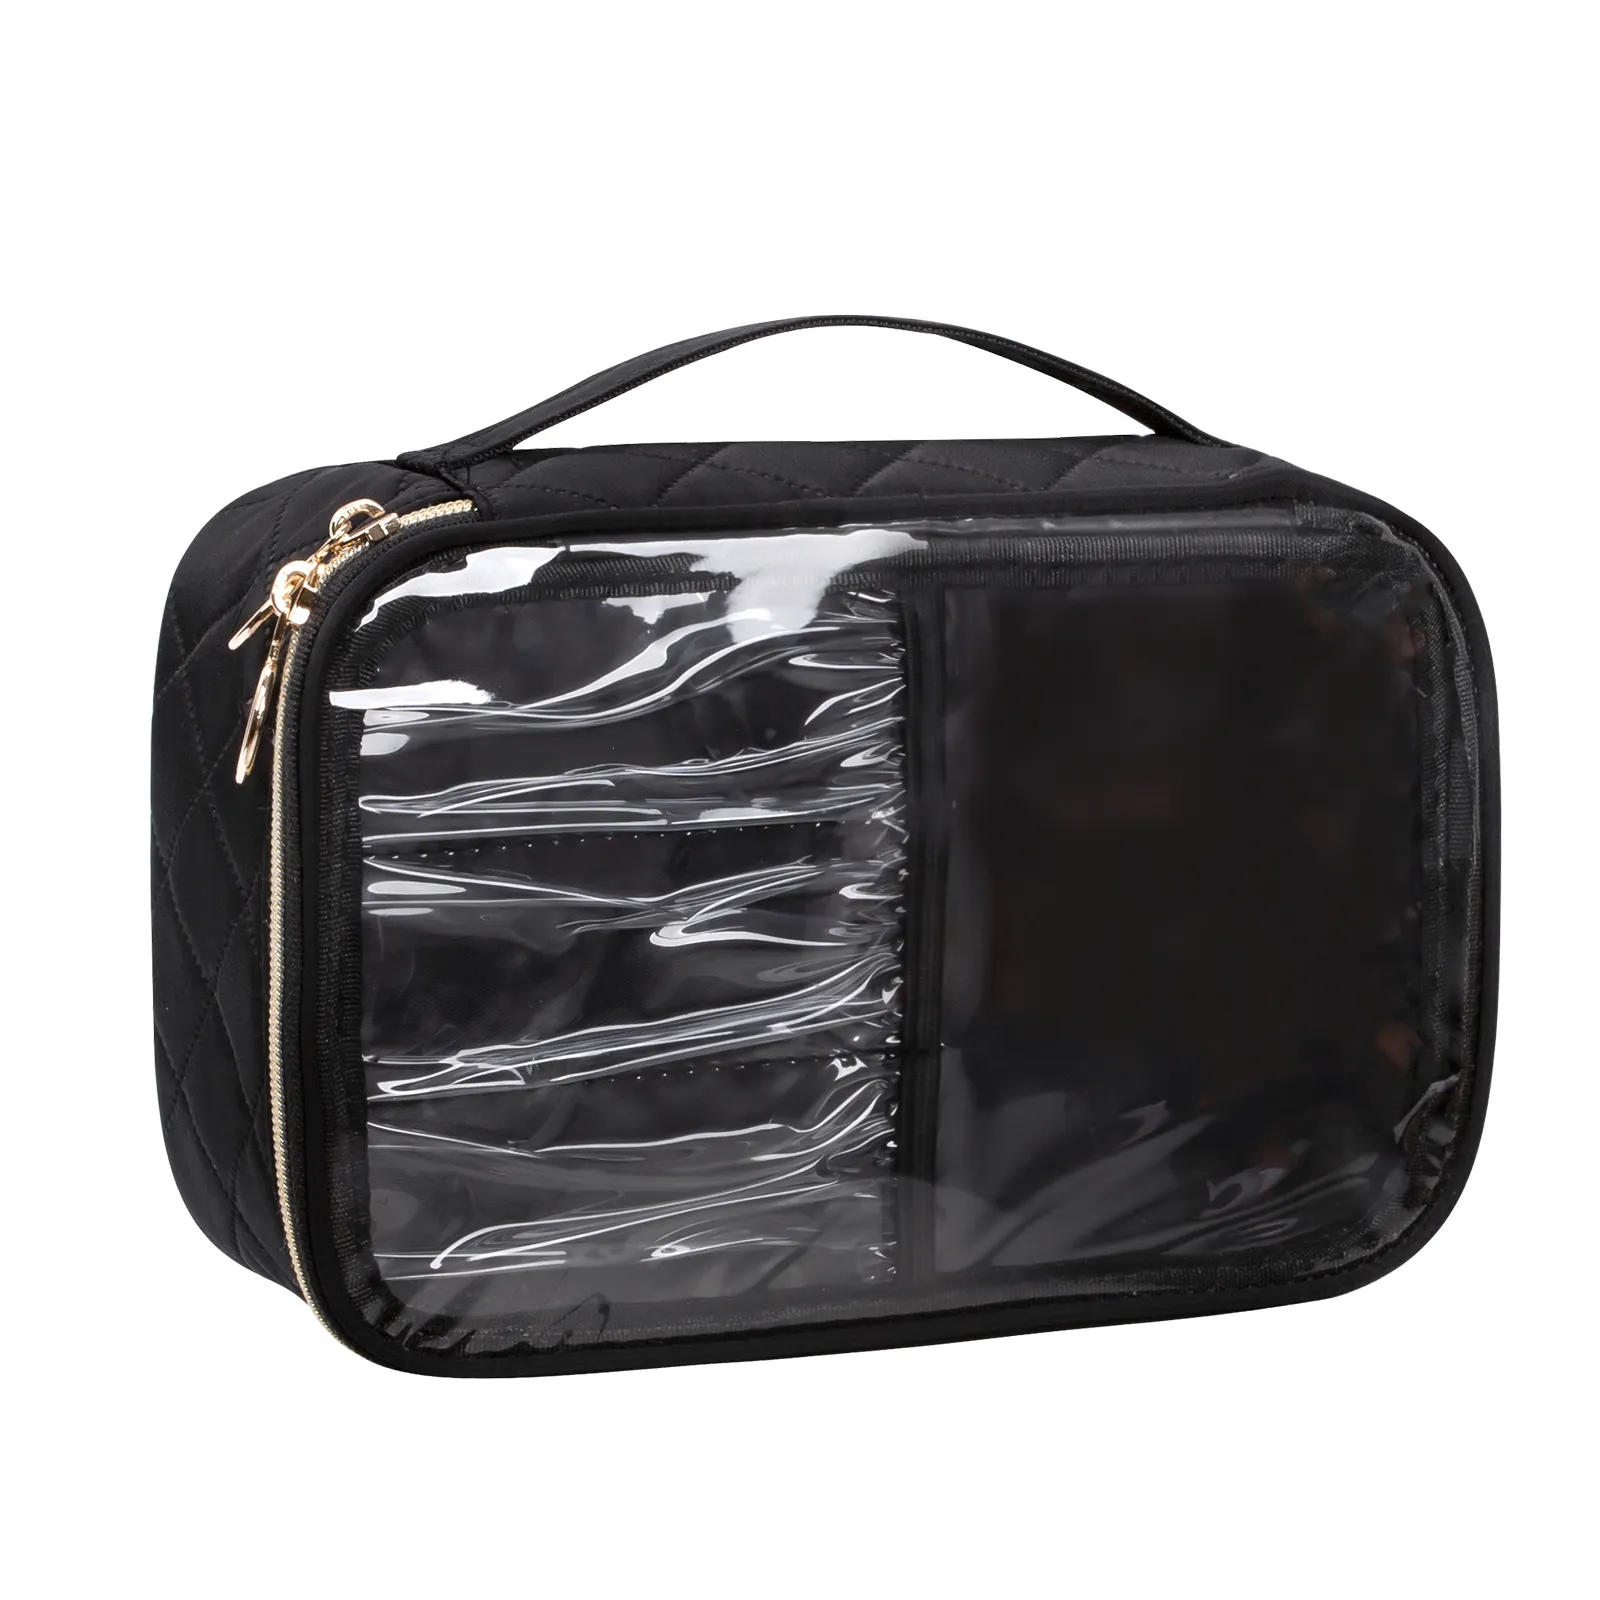 Relavel Grand sac cosmétique translucide à compartiment unique avec compartiment gaufré noir pour femmes et filles cosmétiques